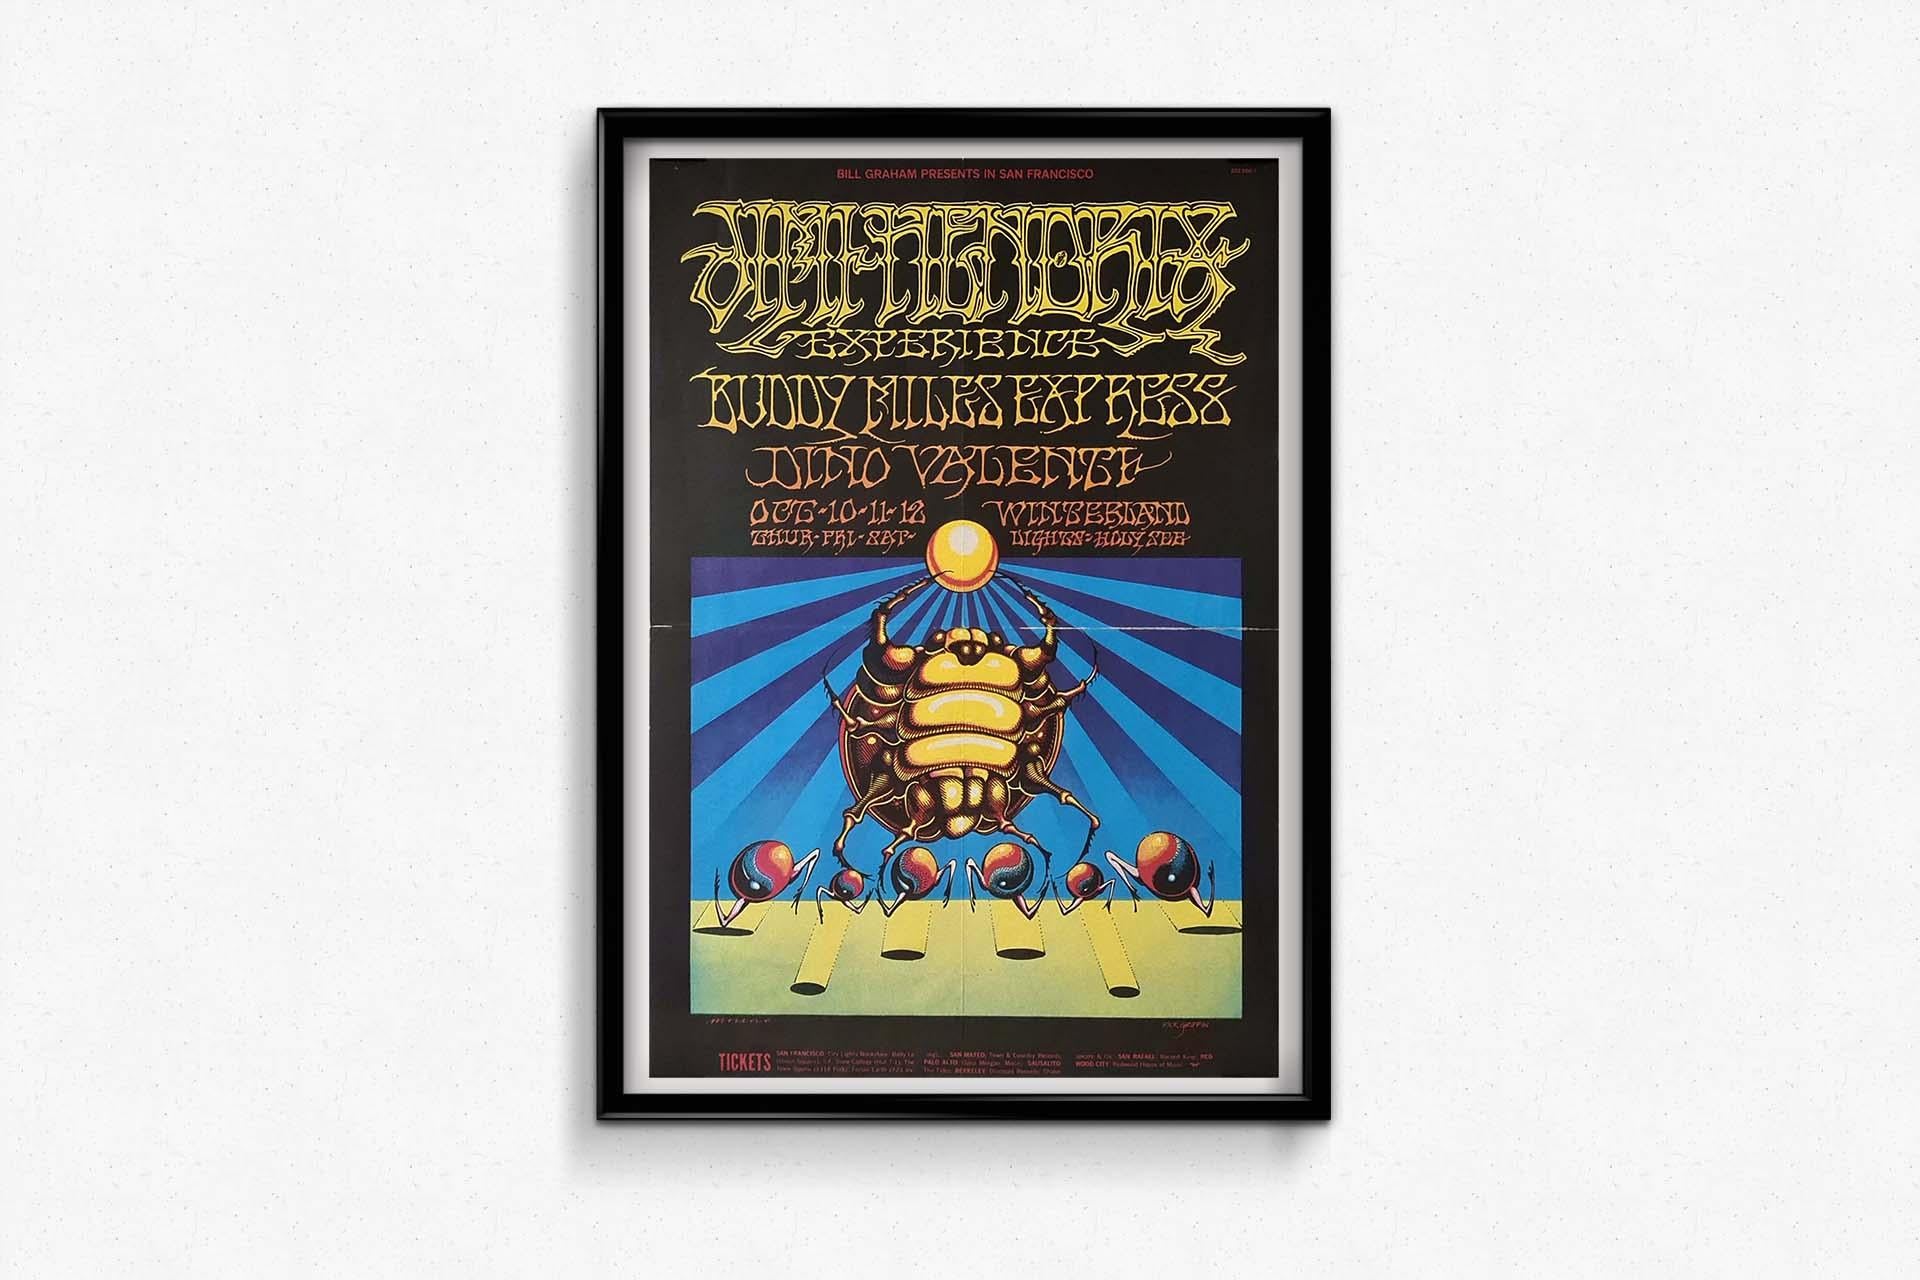 Affiche pour le concert de Jimi Hendrix, Buddy Miles Express et Dino Valenti en vente 2